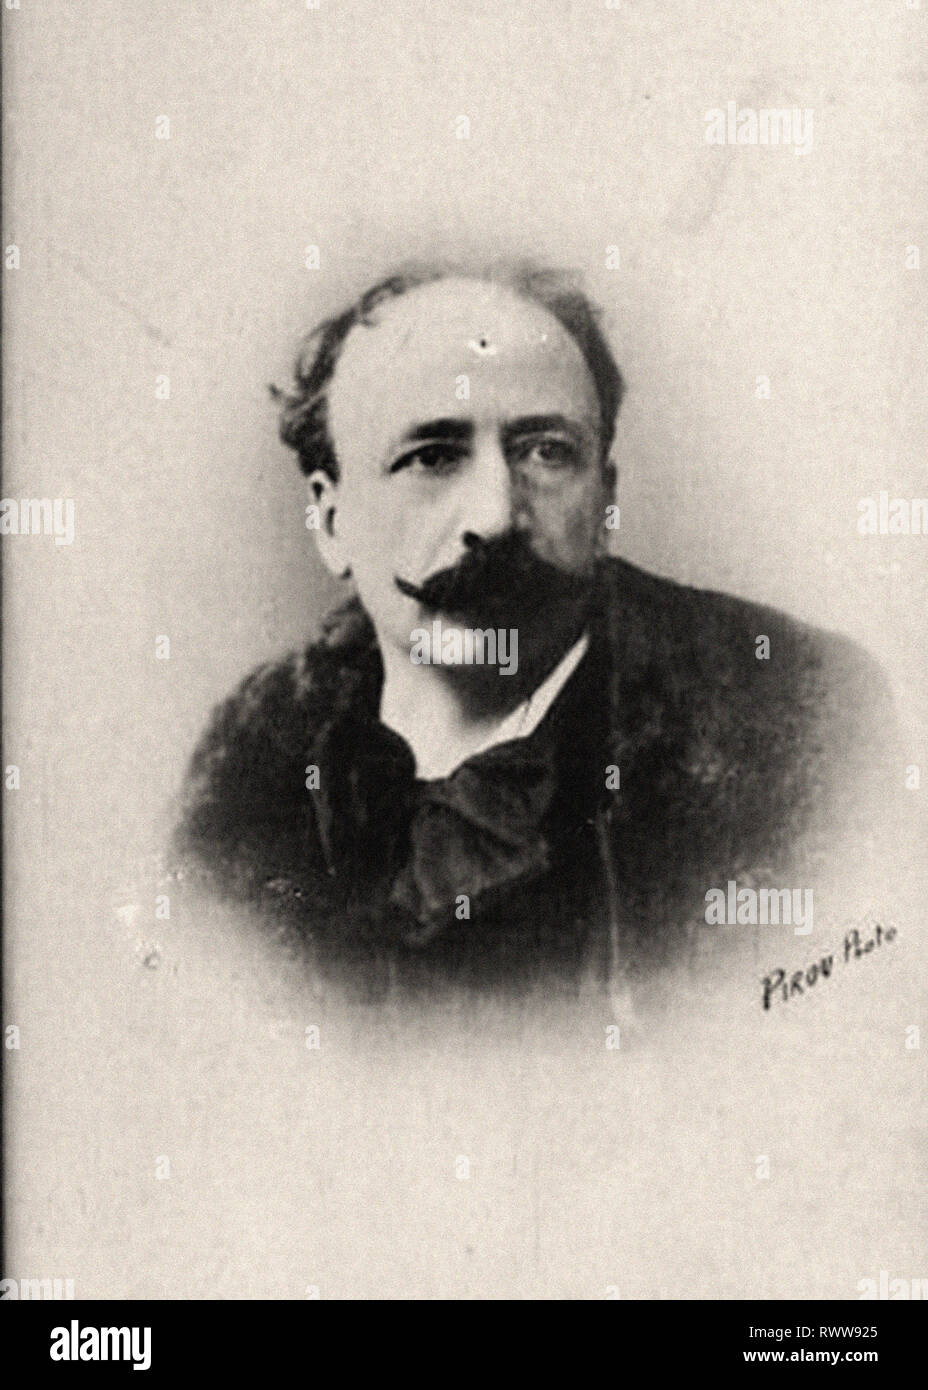 Photographic portrait of Deschamps, Louis Stock Photo